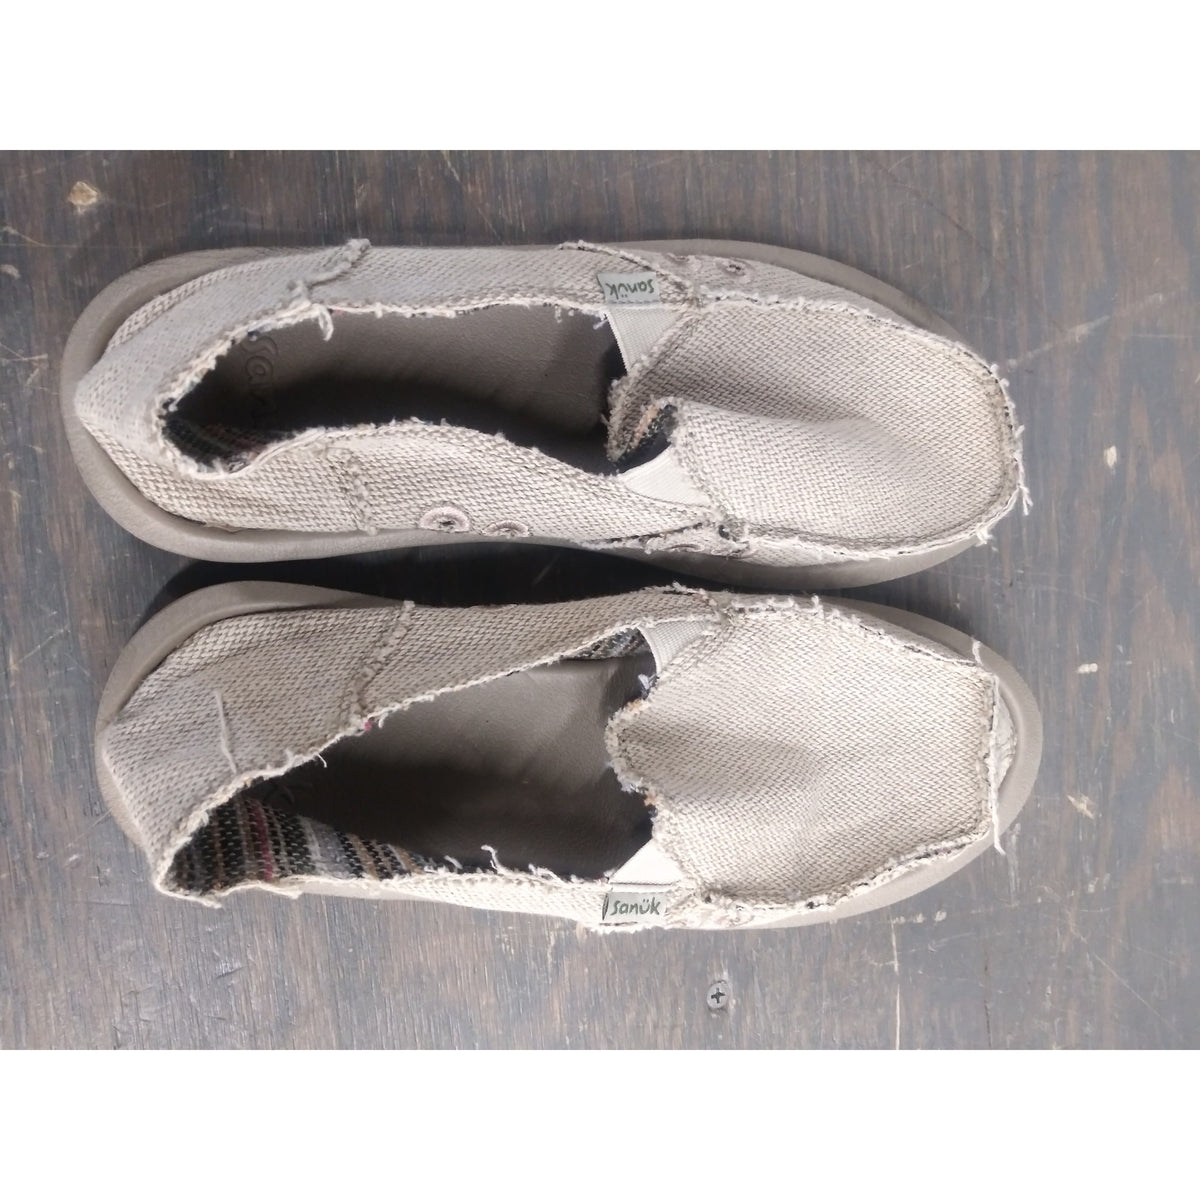 Sanuk Donna Hemp Shoes